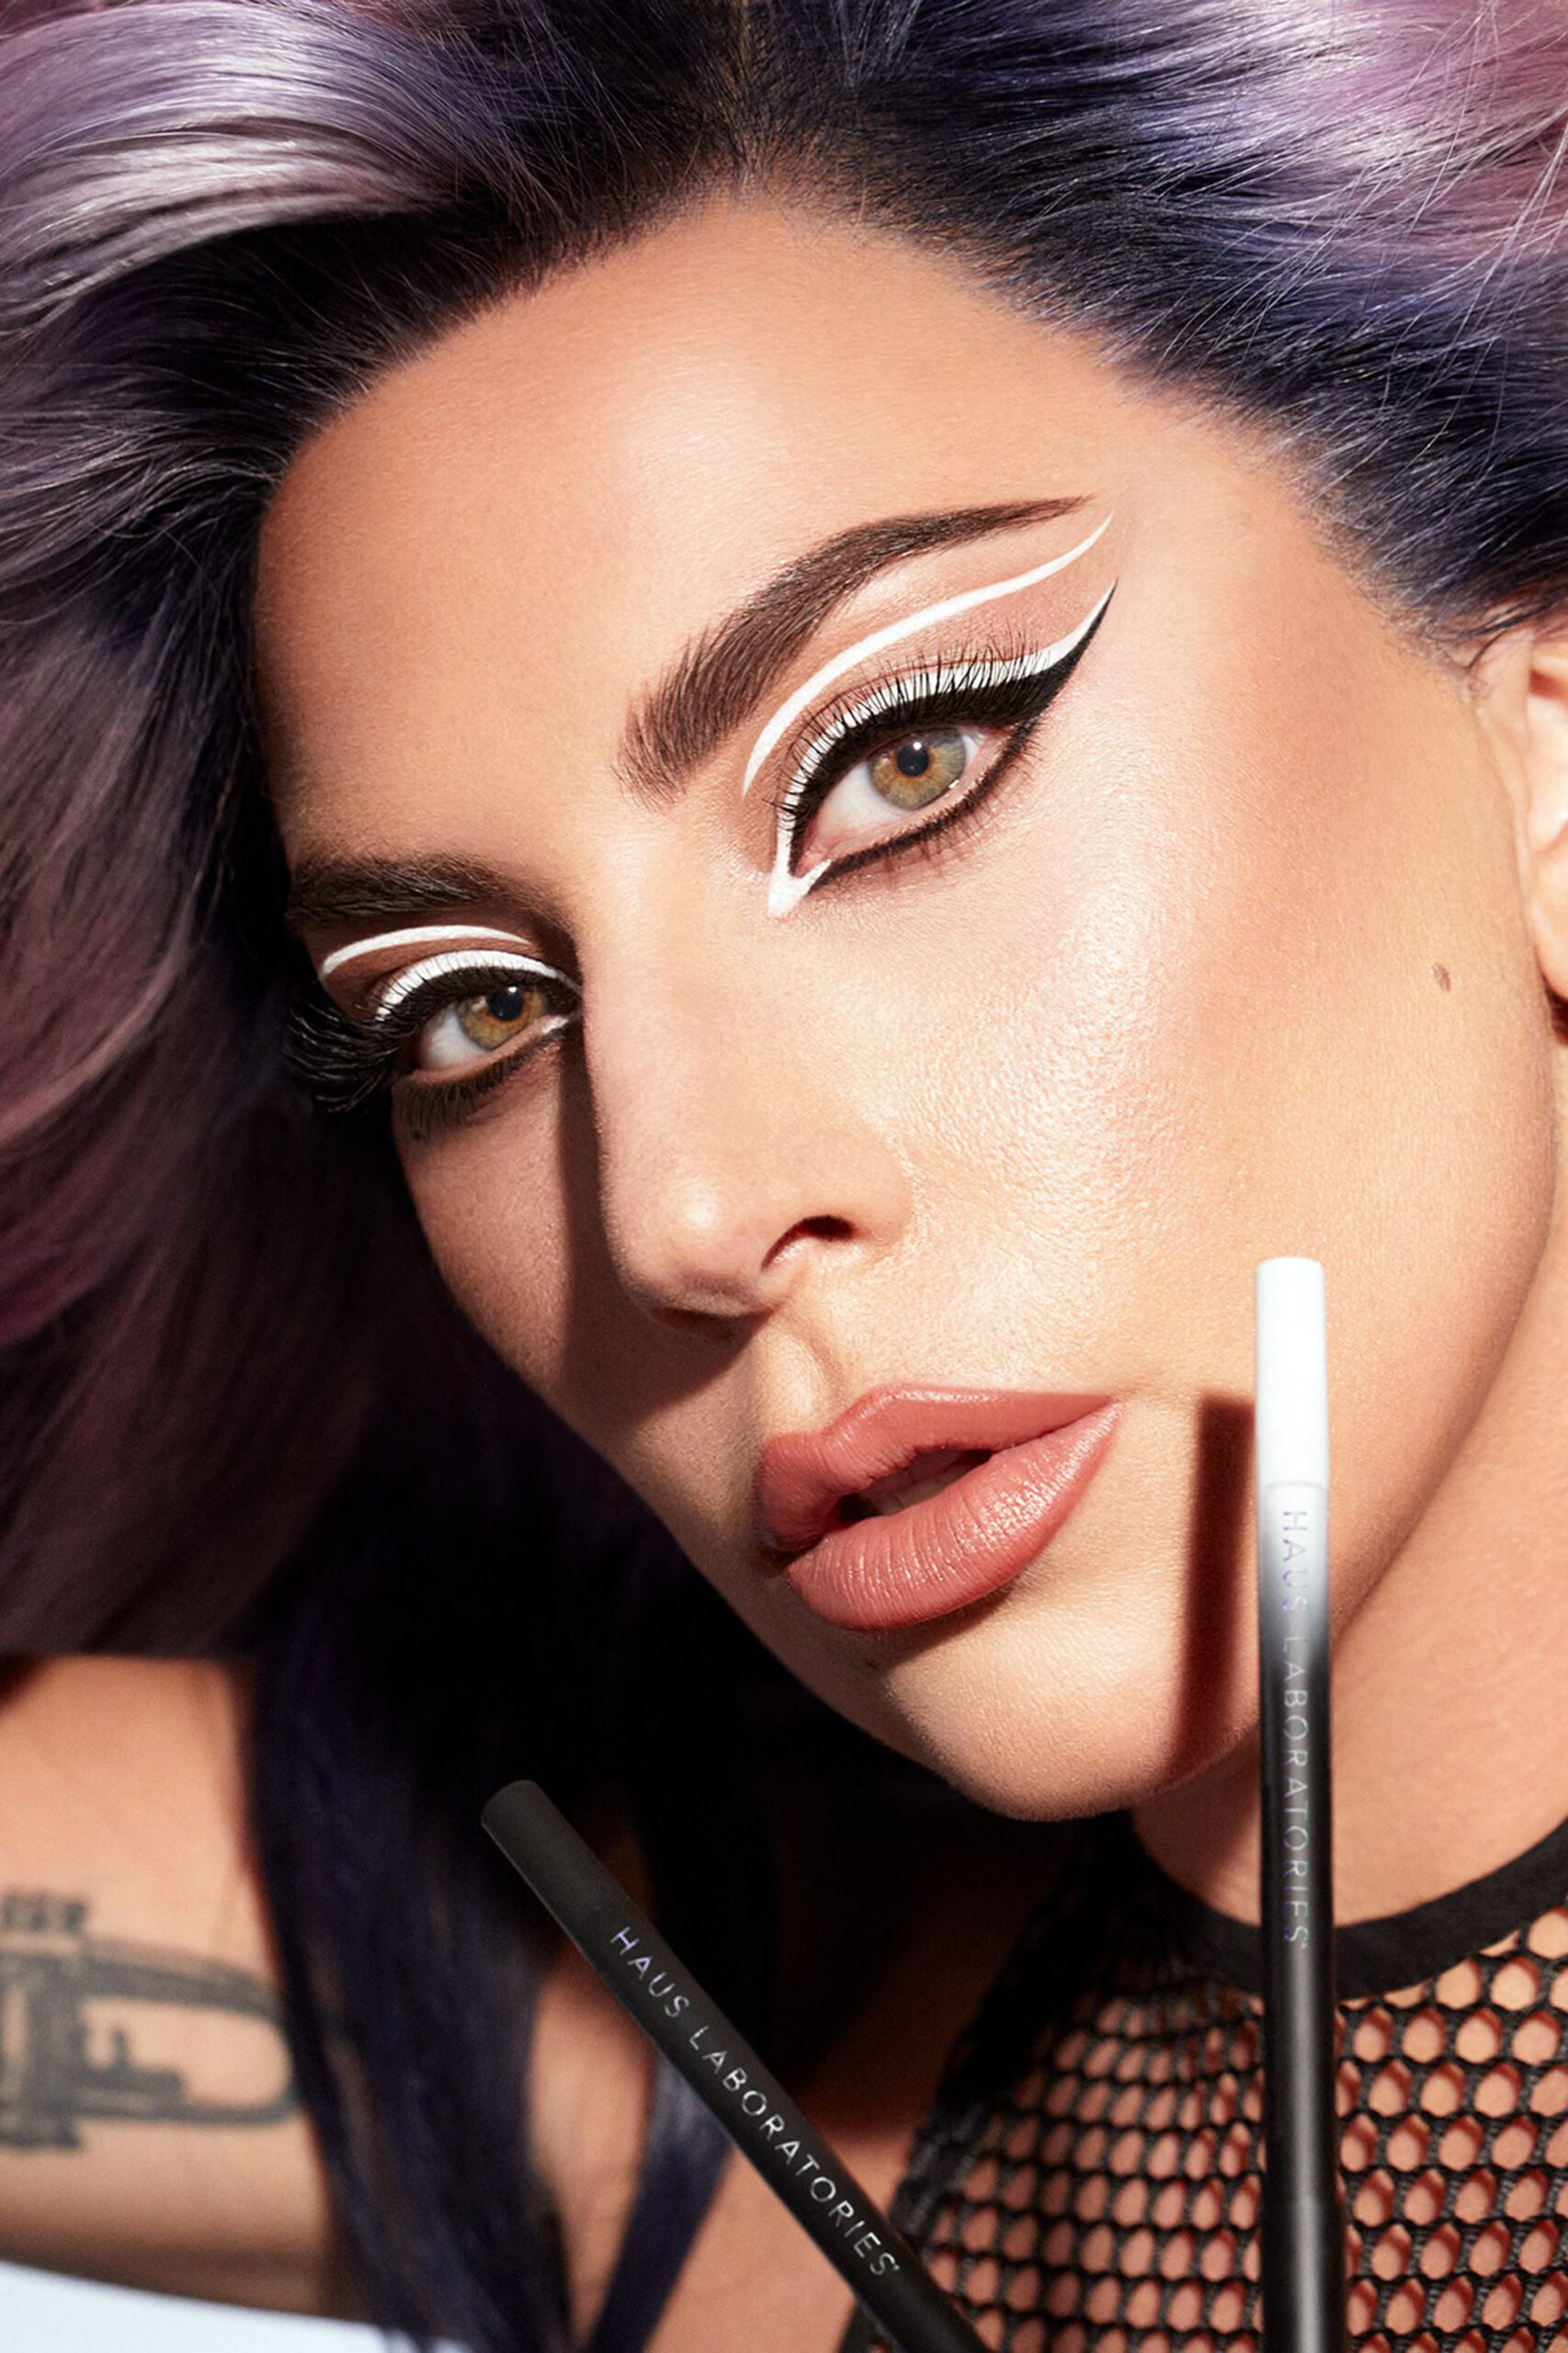 IN-SA-NE! Un român a preluat contul de Instagram al lui Lady Gaga. Ce a creat cu produsele cosmetice Haus Labs?